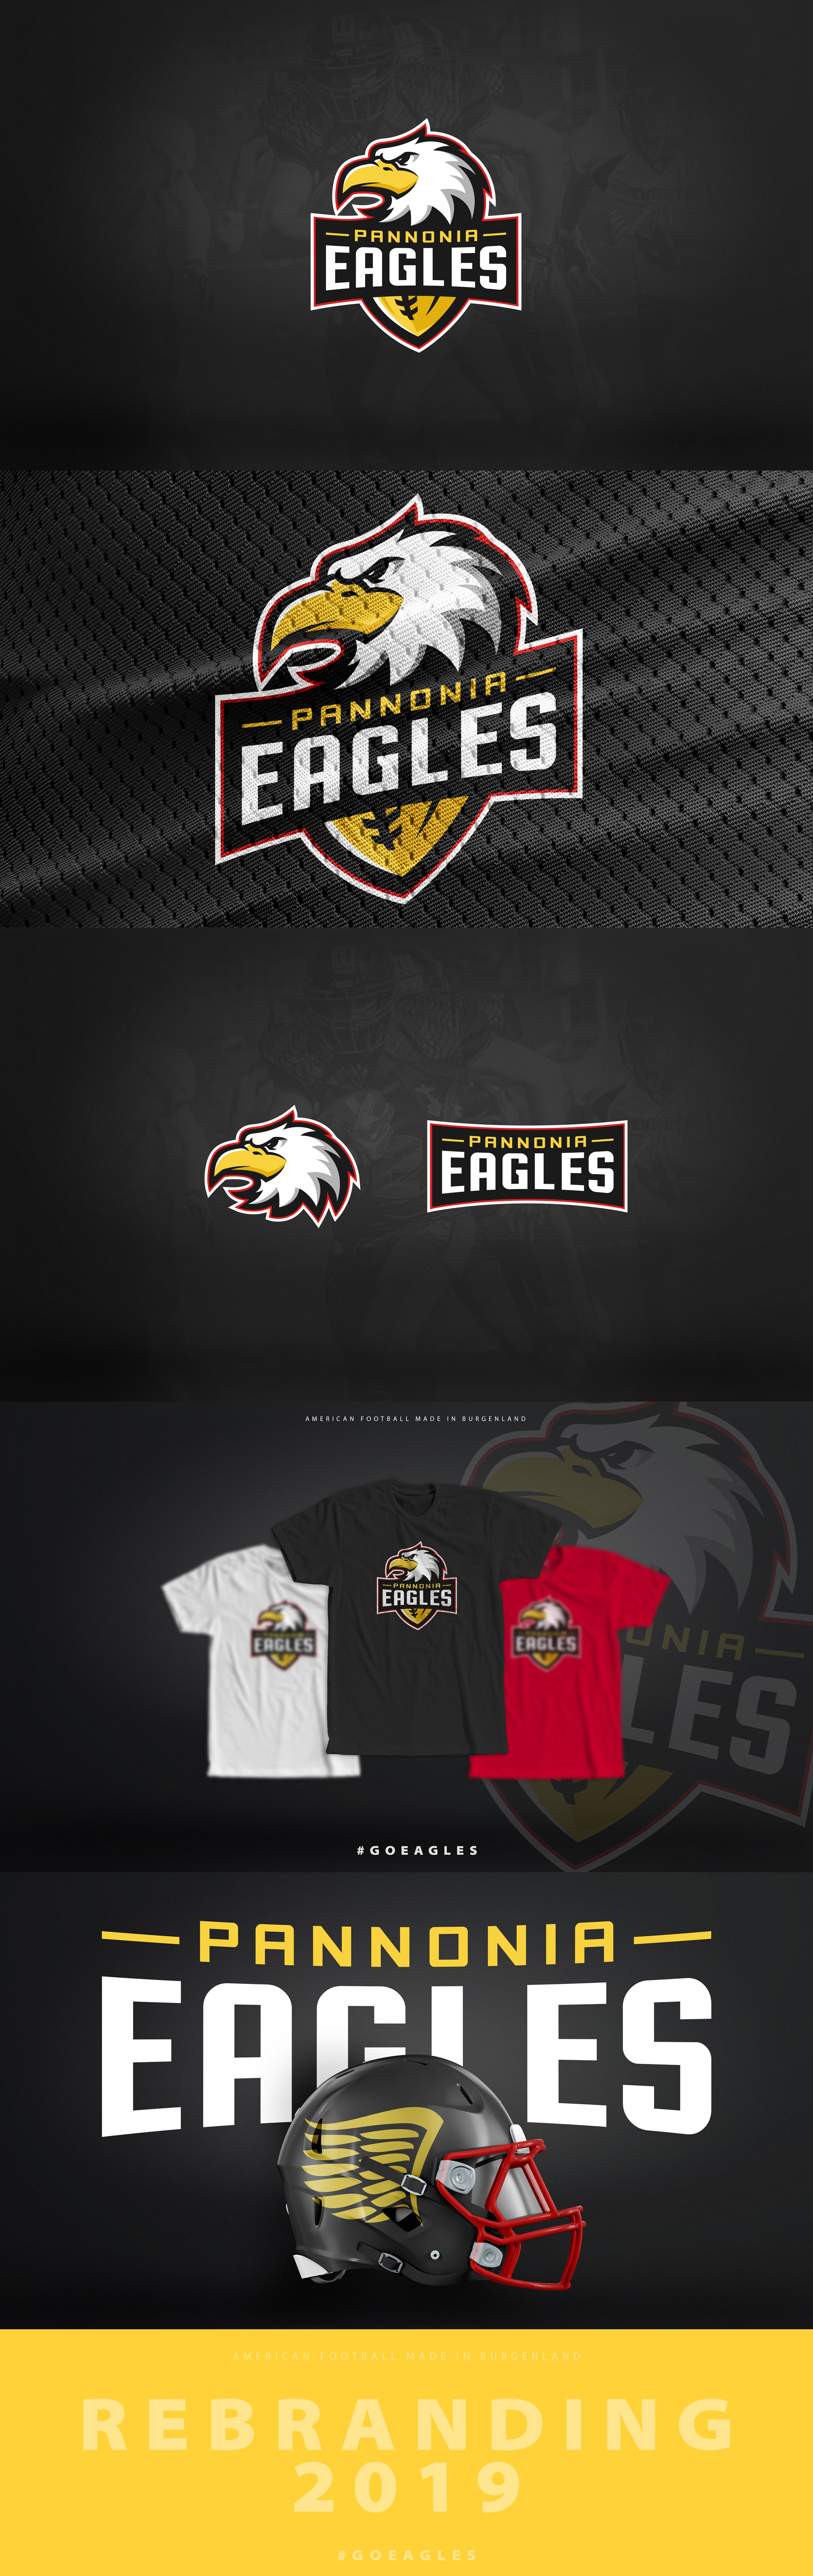 eagles branding 2019